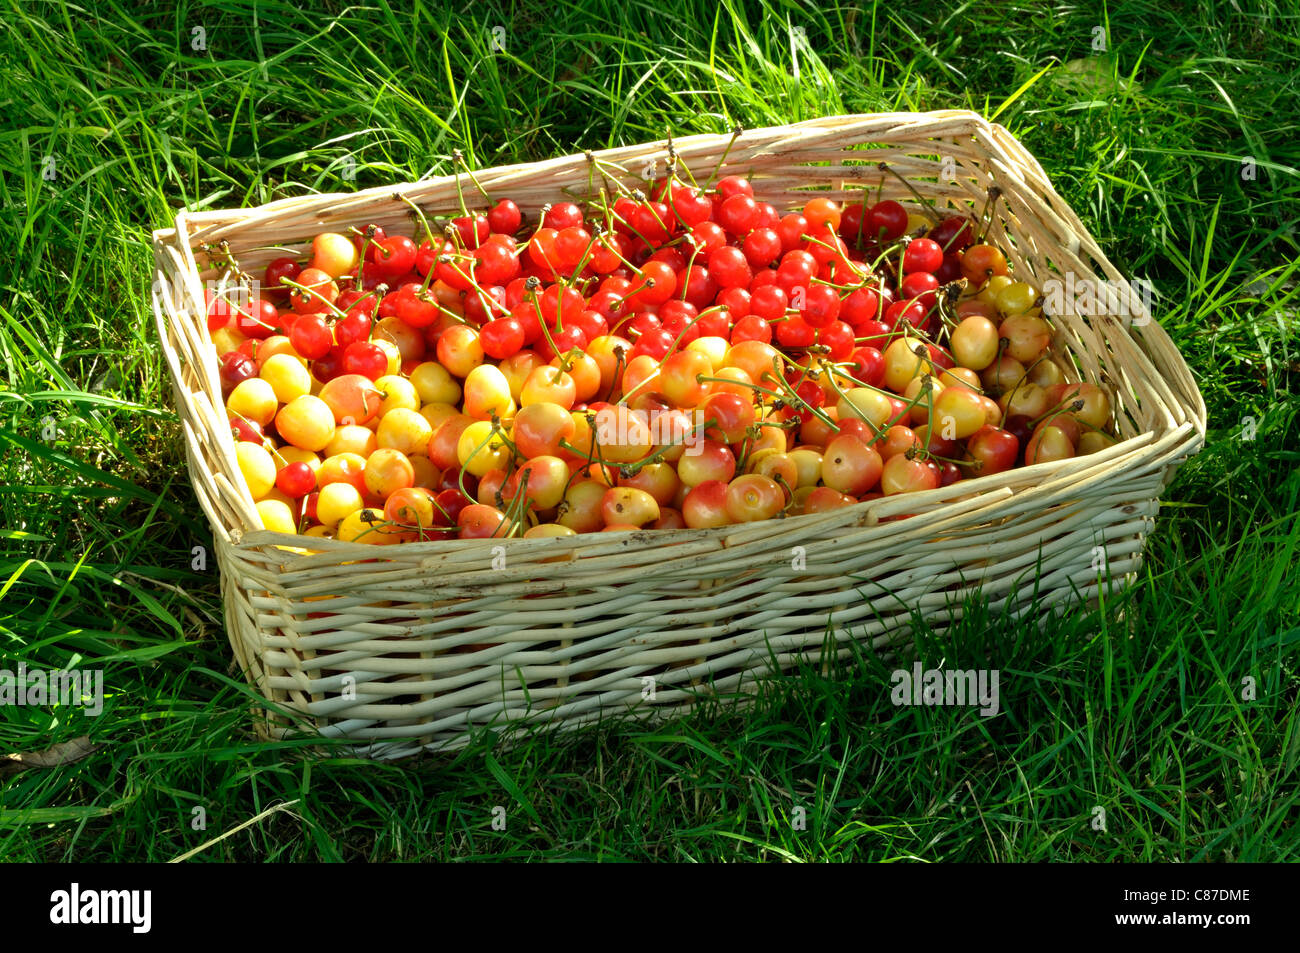 A basket full of cherries (Prunus avium) from the garden Stock Photo